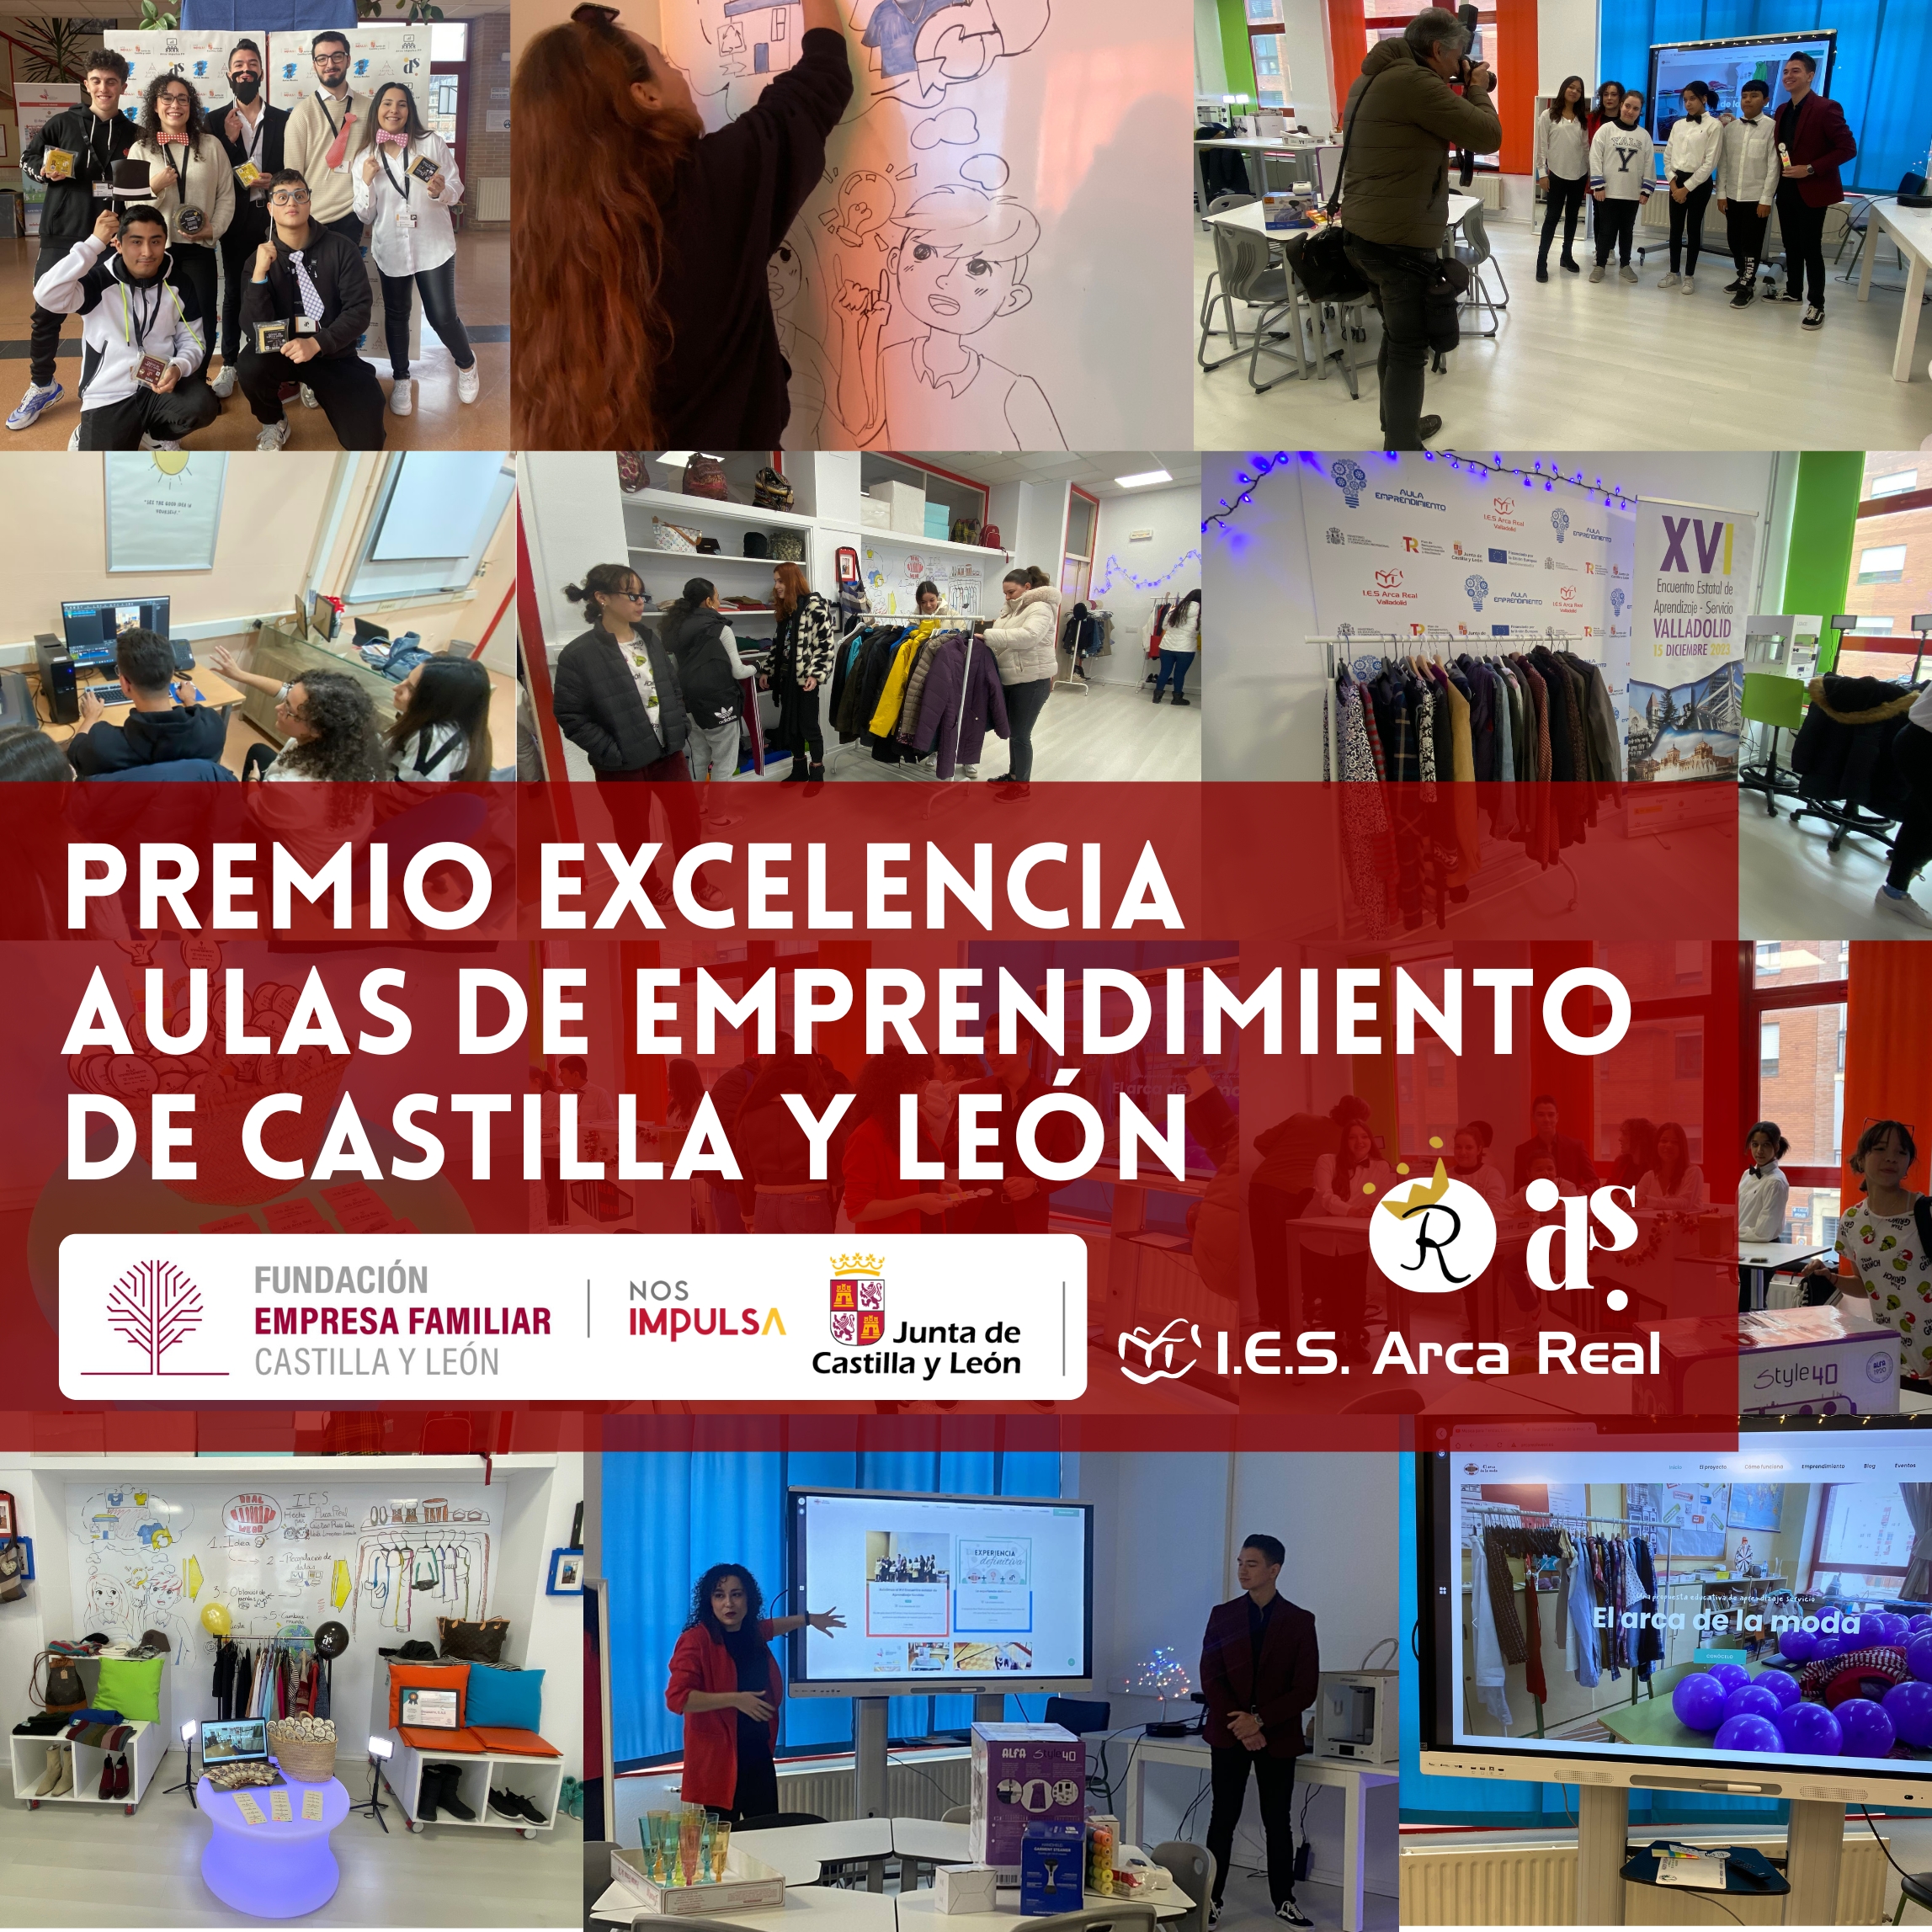 Premios excelencia aulas de emprendimiento de castilla y León